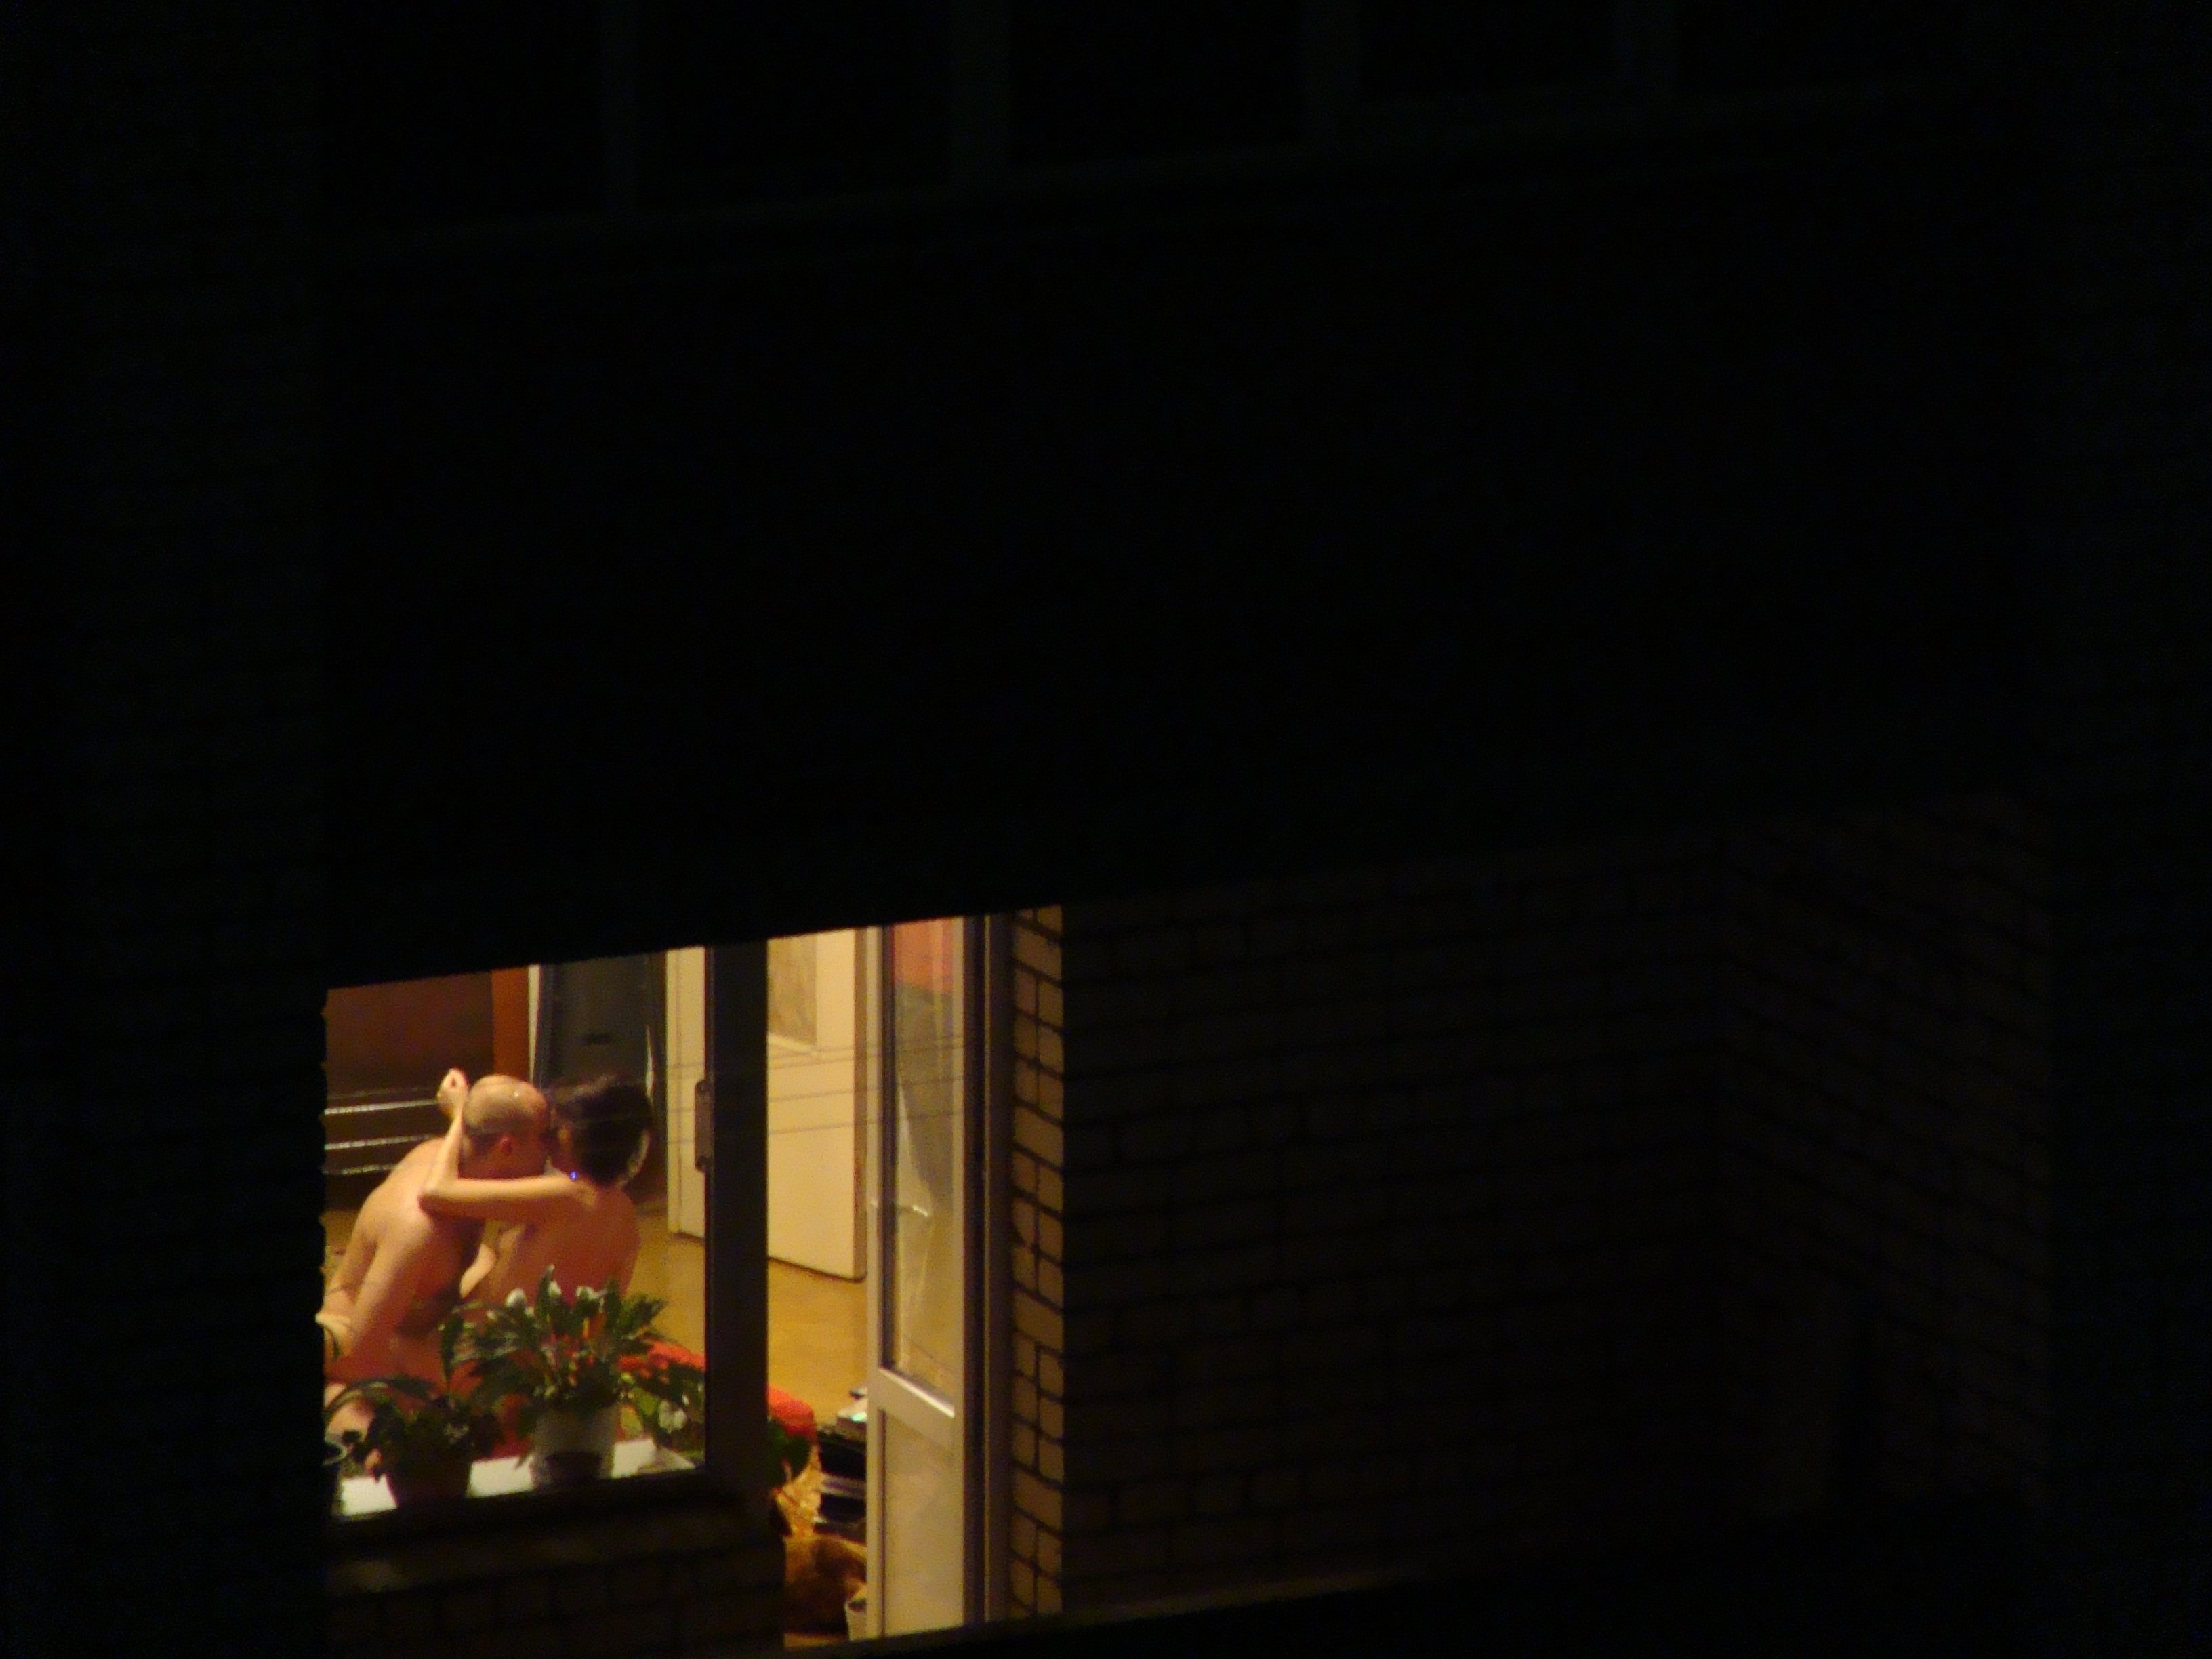 баба смотрит за голым мужиком в окне фото 23